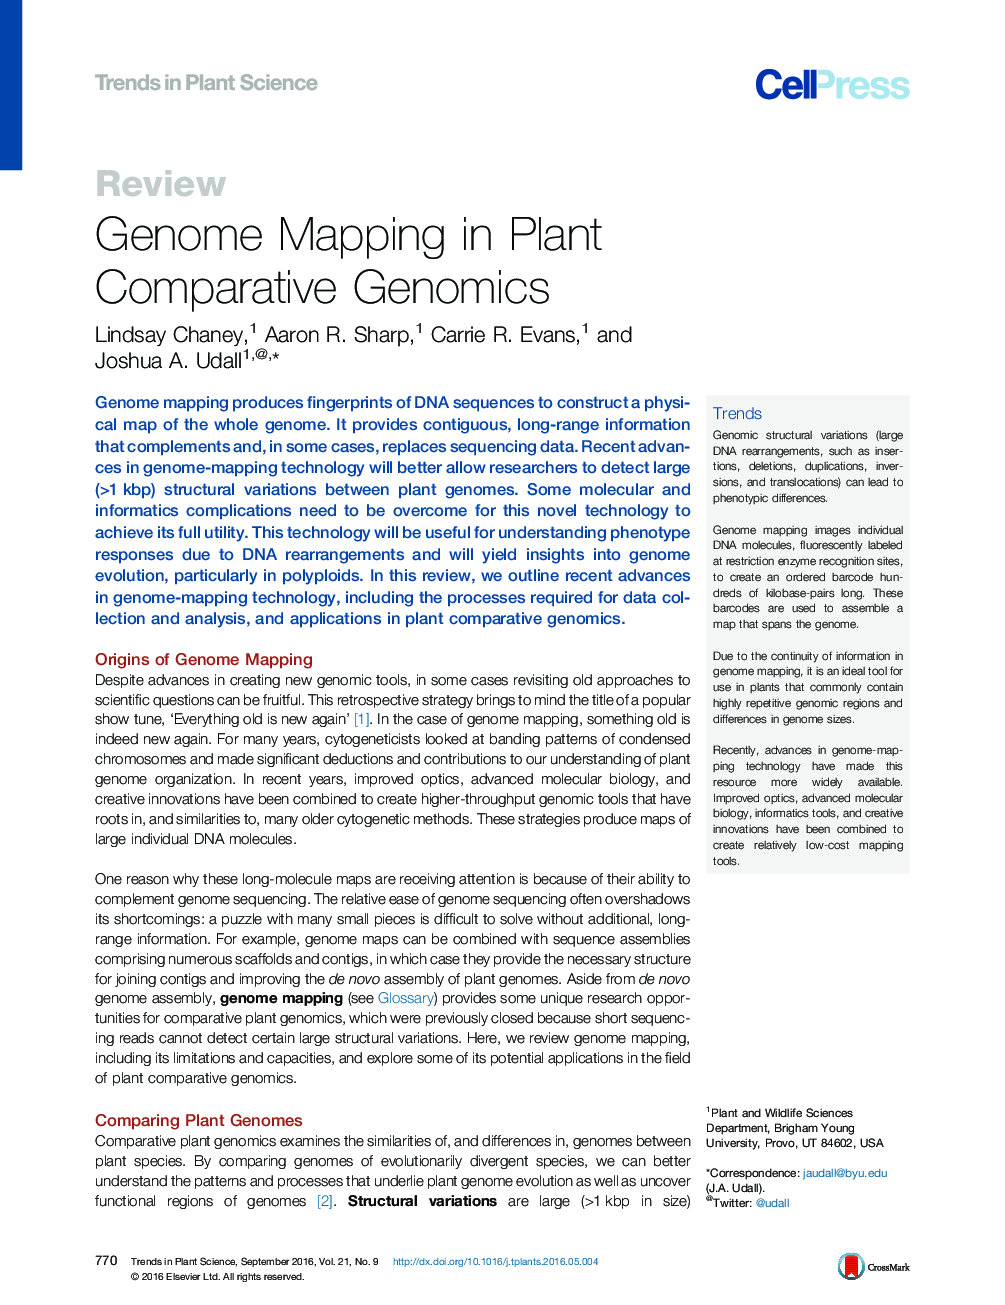 نقشه برداری ژنوم در ژنومیک مقایسه گیاهی 